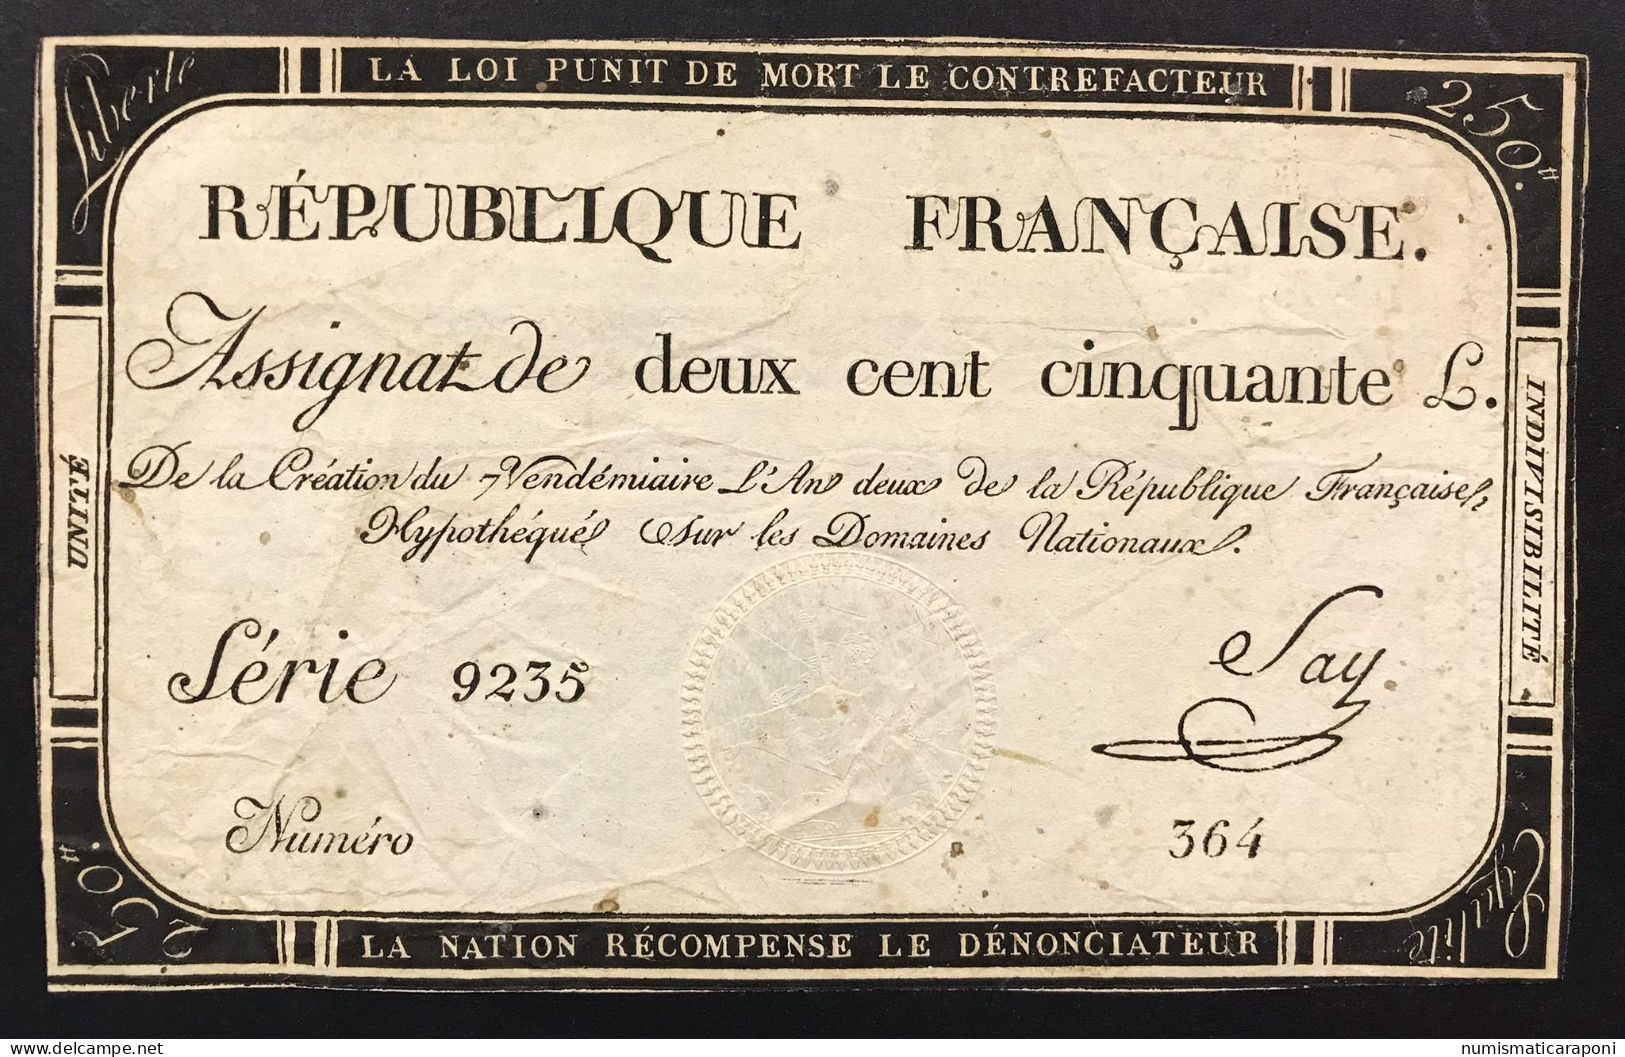 Francia France Assignat De 250 Livres  Lotto.1577 - ...-1889 Francos Ancianos Circulantes Durante XIXesimo